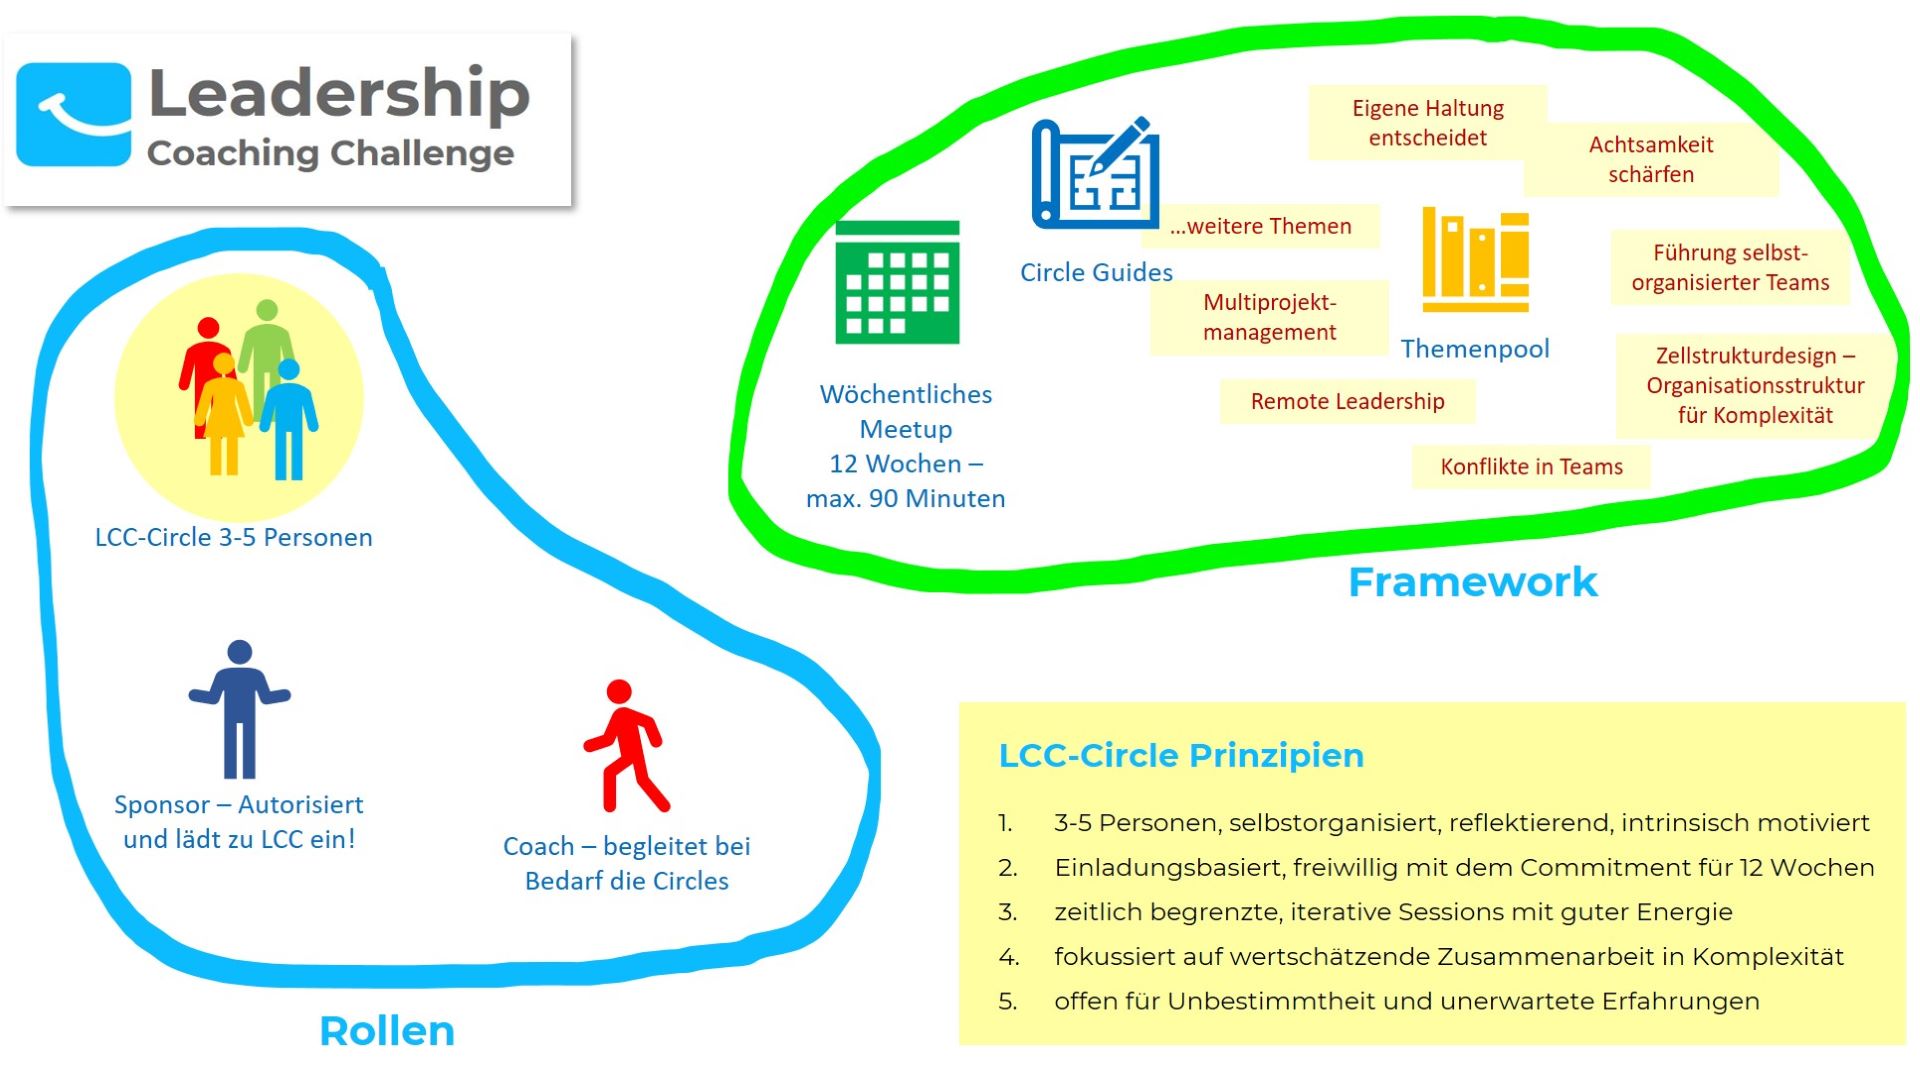 Leadership Coaching Challenge - Framework